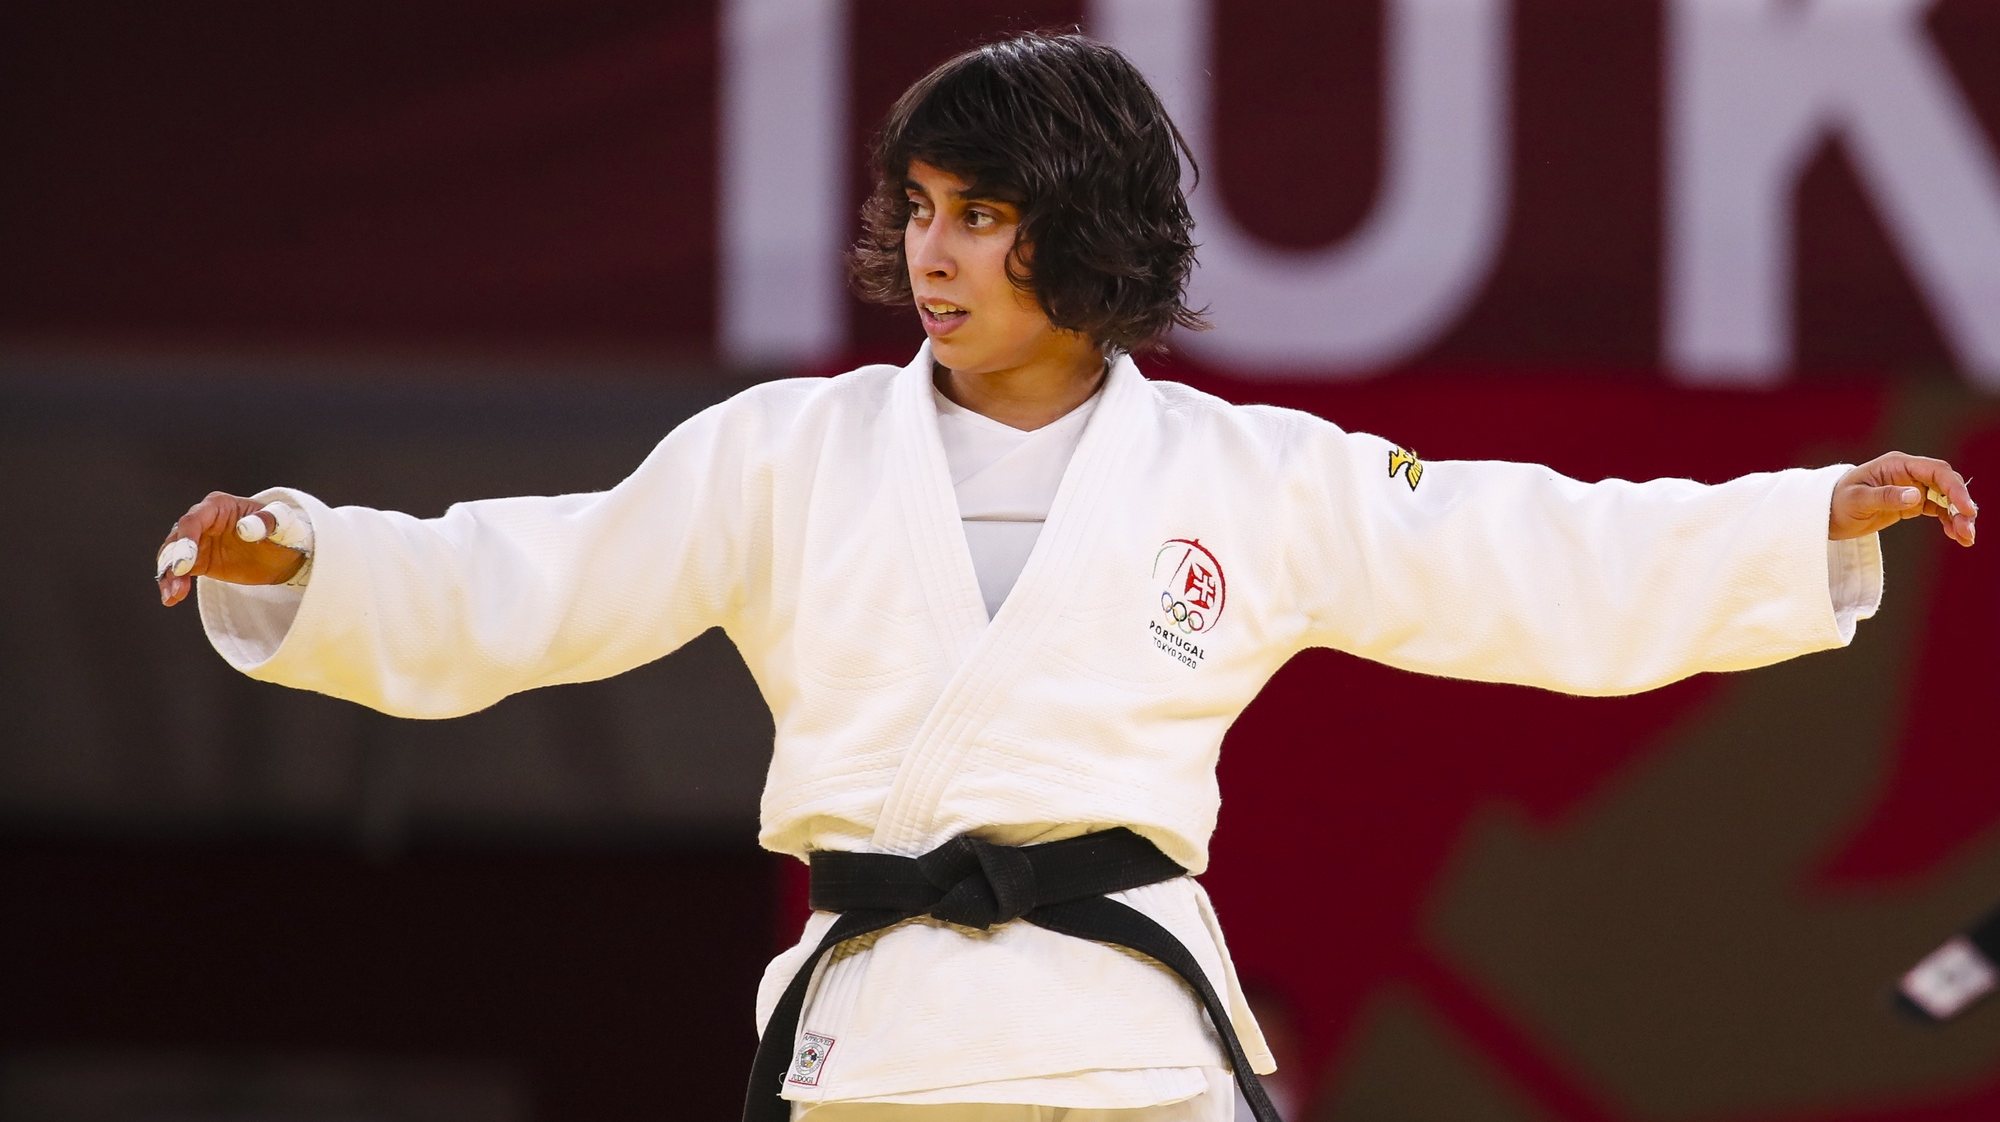 A judoca Catarina Costa reage após terminar no quinto lugar na categoria de -48 kg nos Jogos Olímpicos de Tóquio2020, ao perder no combate para a atribuição da medalha de bronze com a mongol Urantsetseg Munkhbat, na arena Nippon Budokan, Tóquio, Japão, 24 de julho de 2021